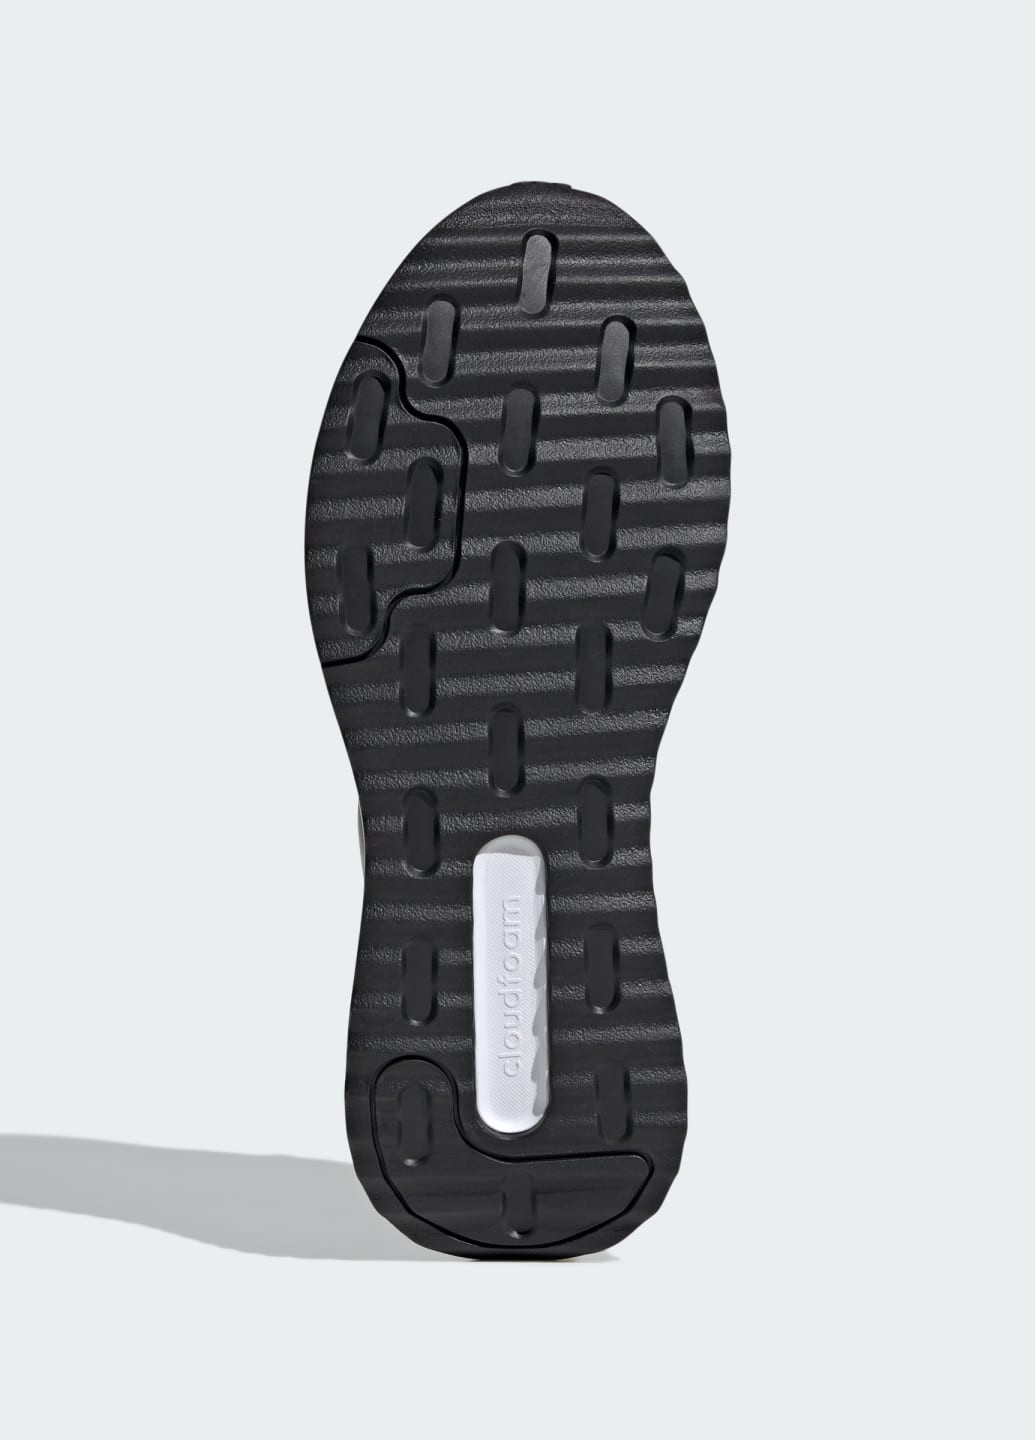 Фіолетові всесезонні кросівки x_plr path adidas